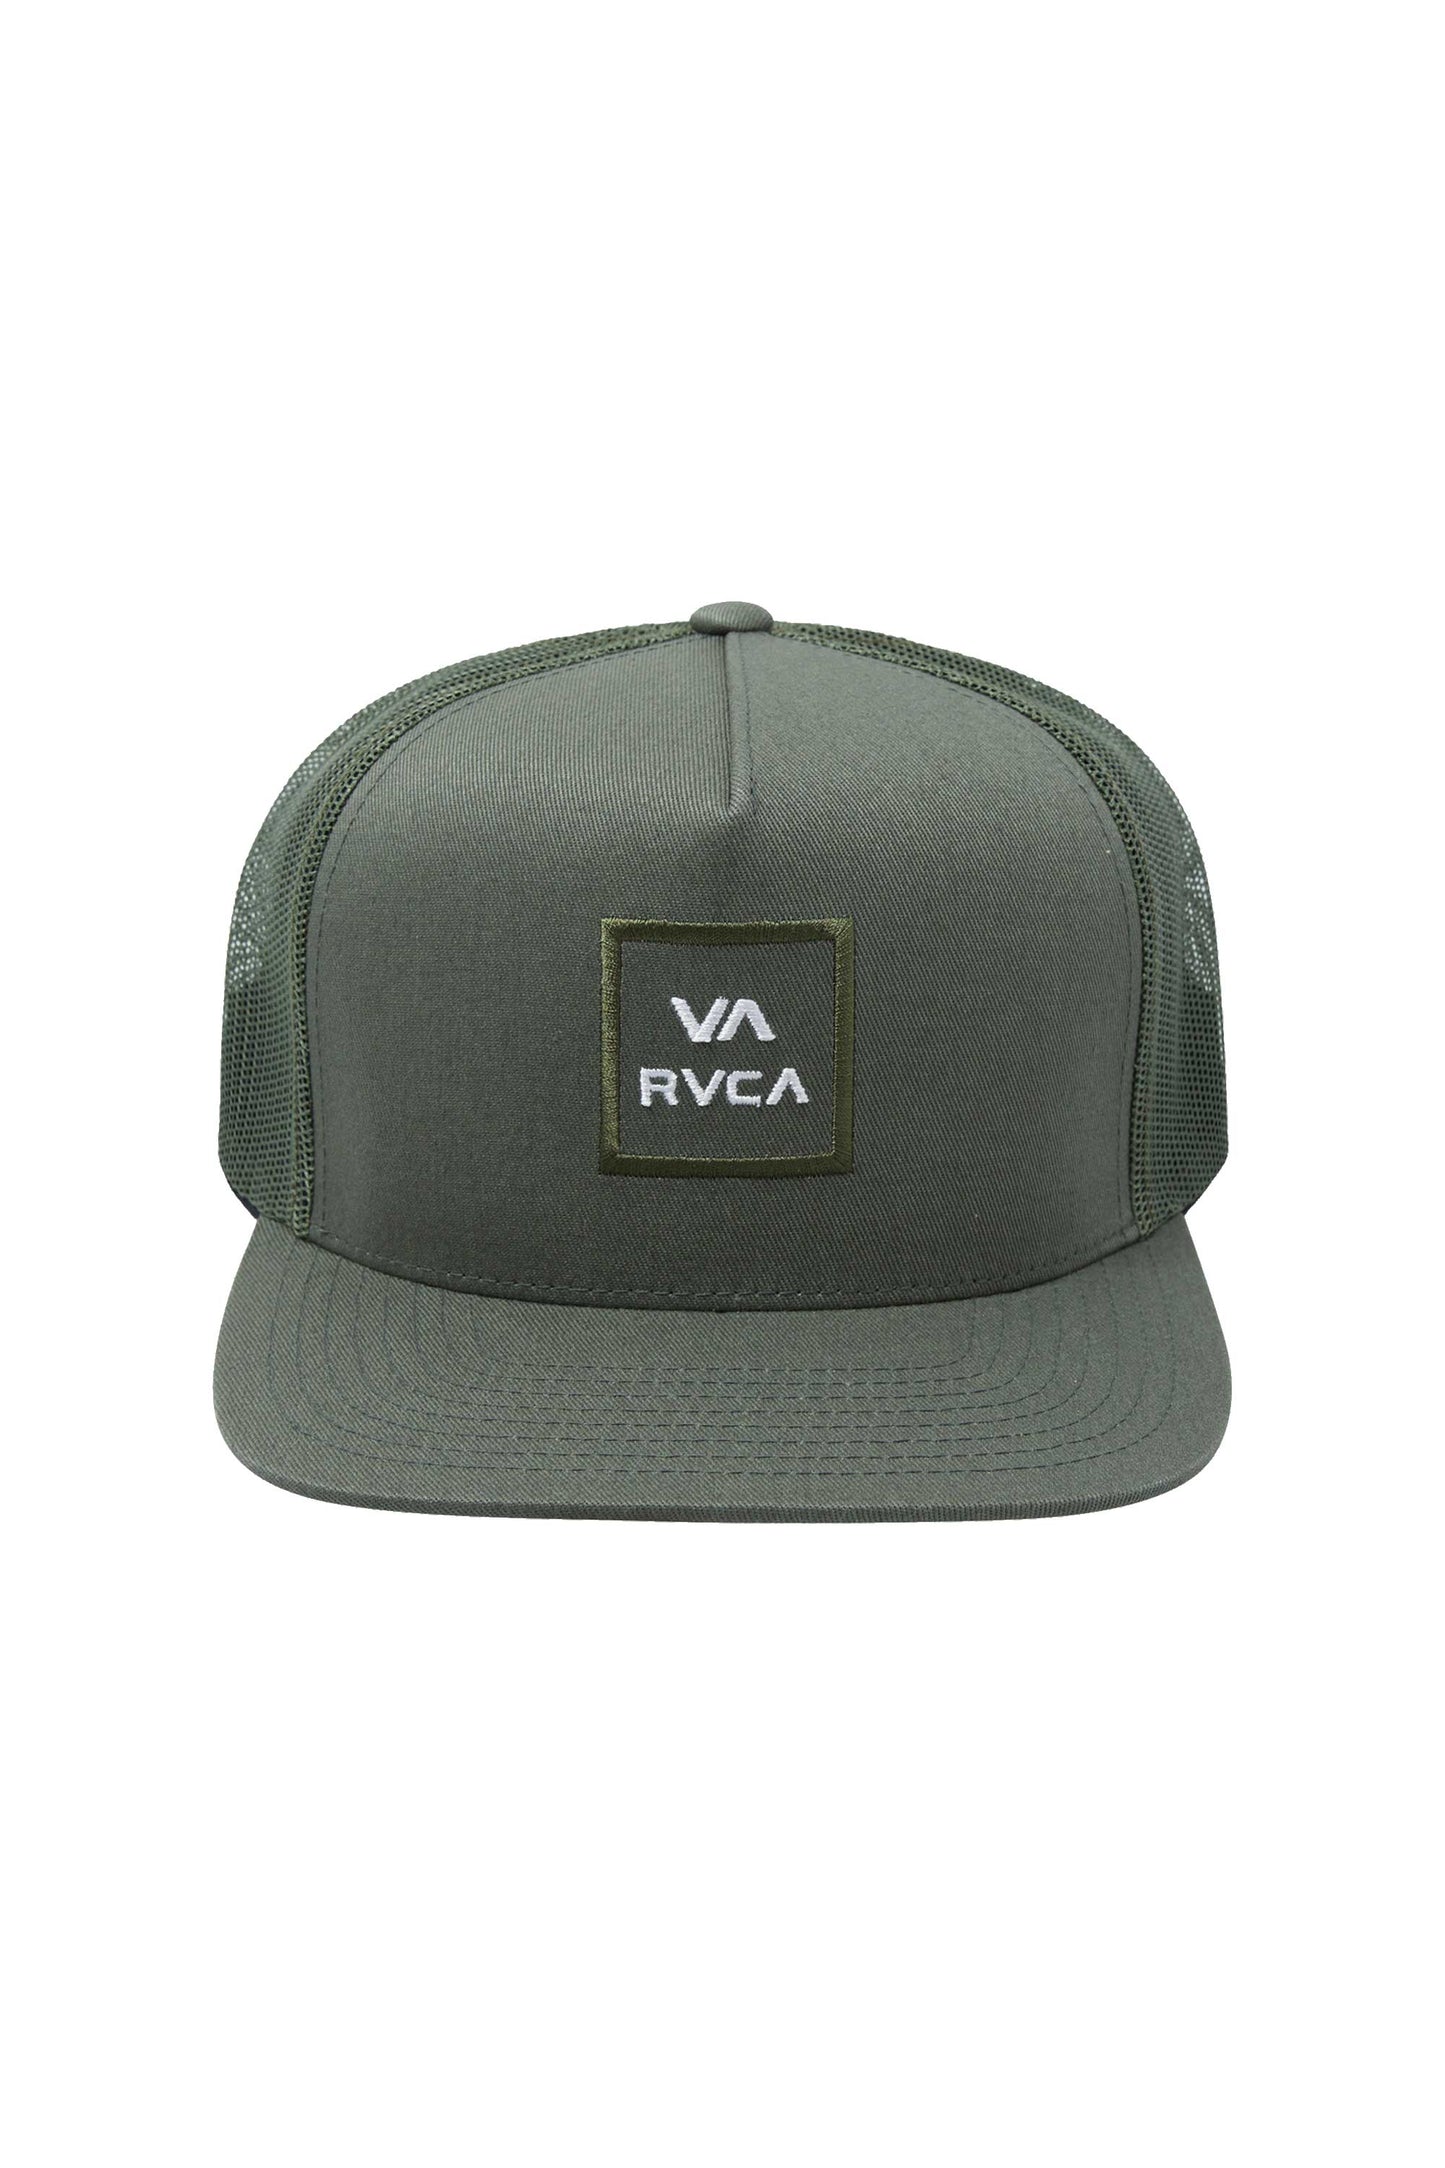 
                  
                    Pukas-Surf-Shop-RVCA-man-cap-VA-All-the-way-trucker-hat-jade
                  
                